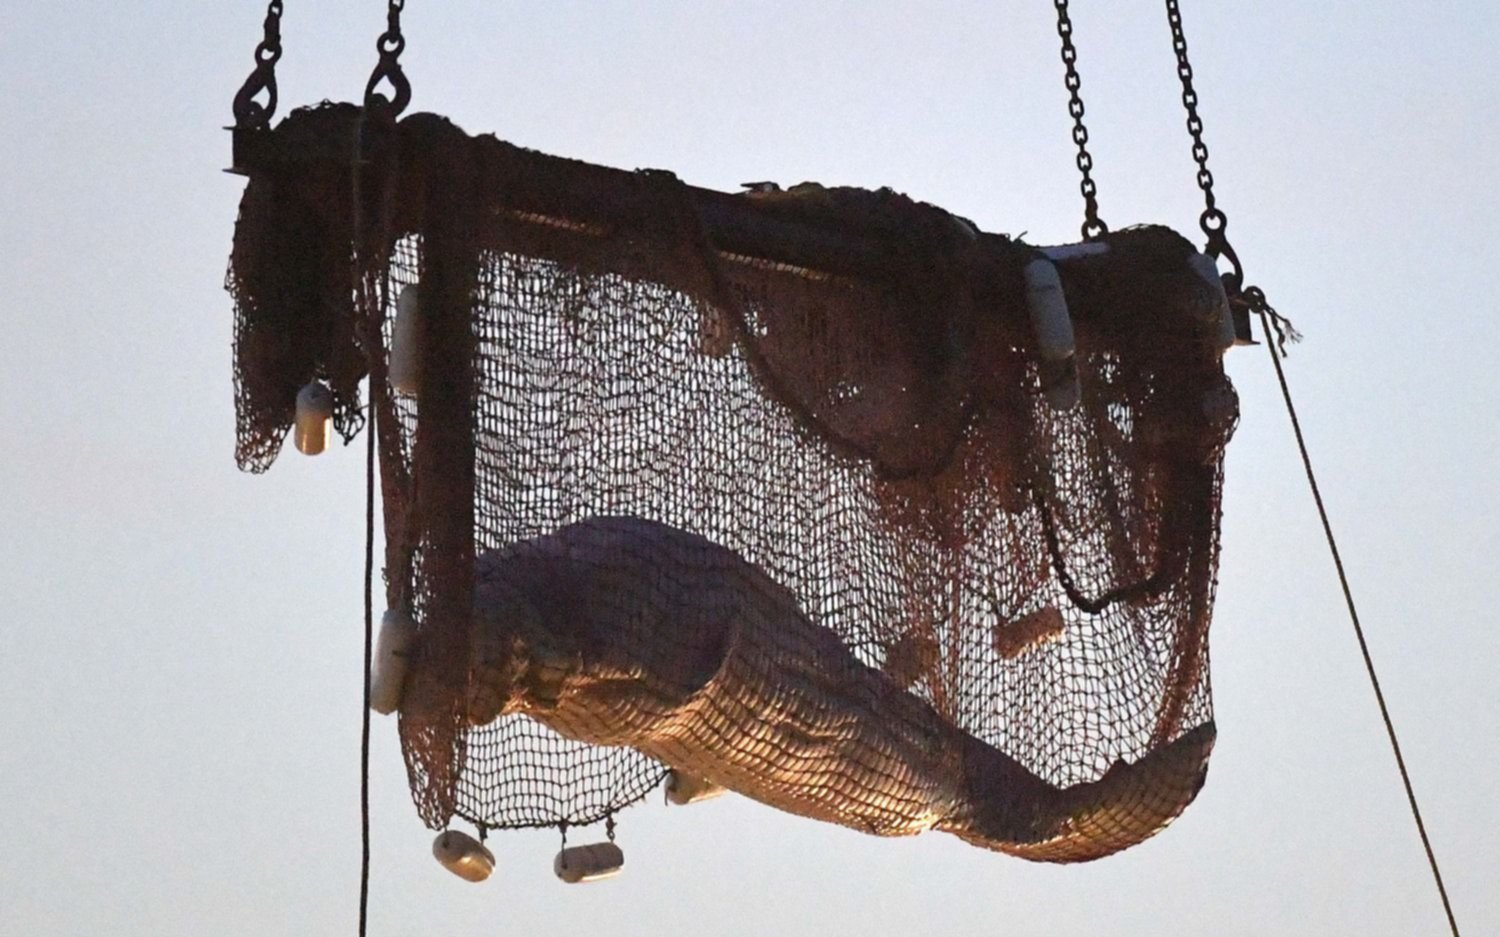 Murió la beluga de 800 kilos rescatada del río Sena tras permanecer varada más de una semana